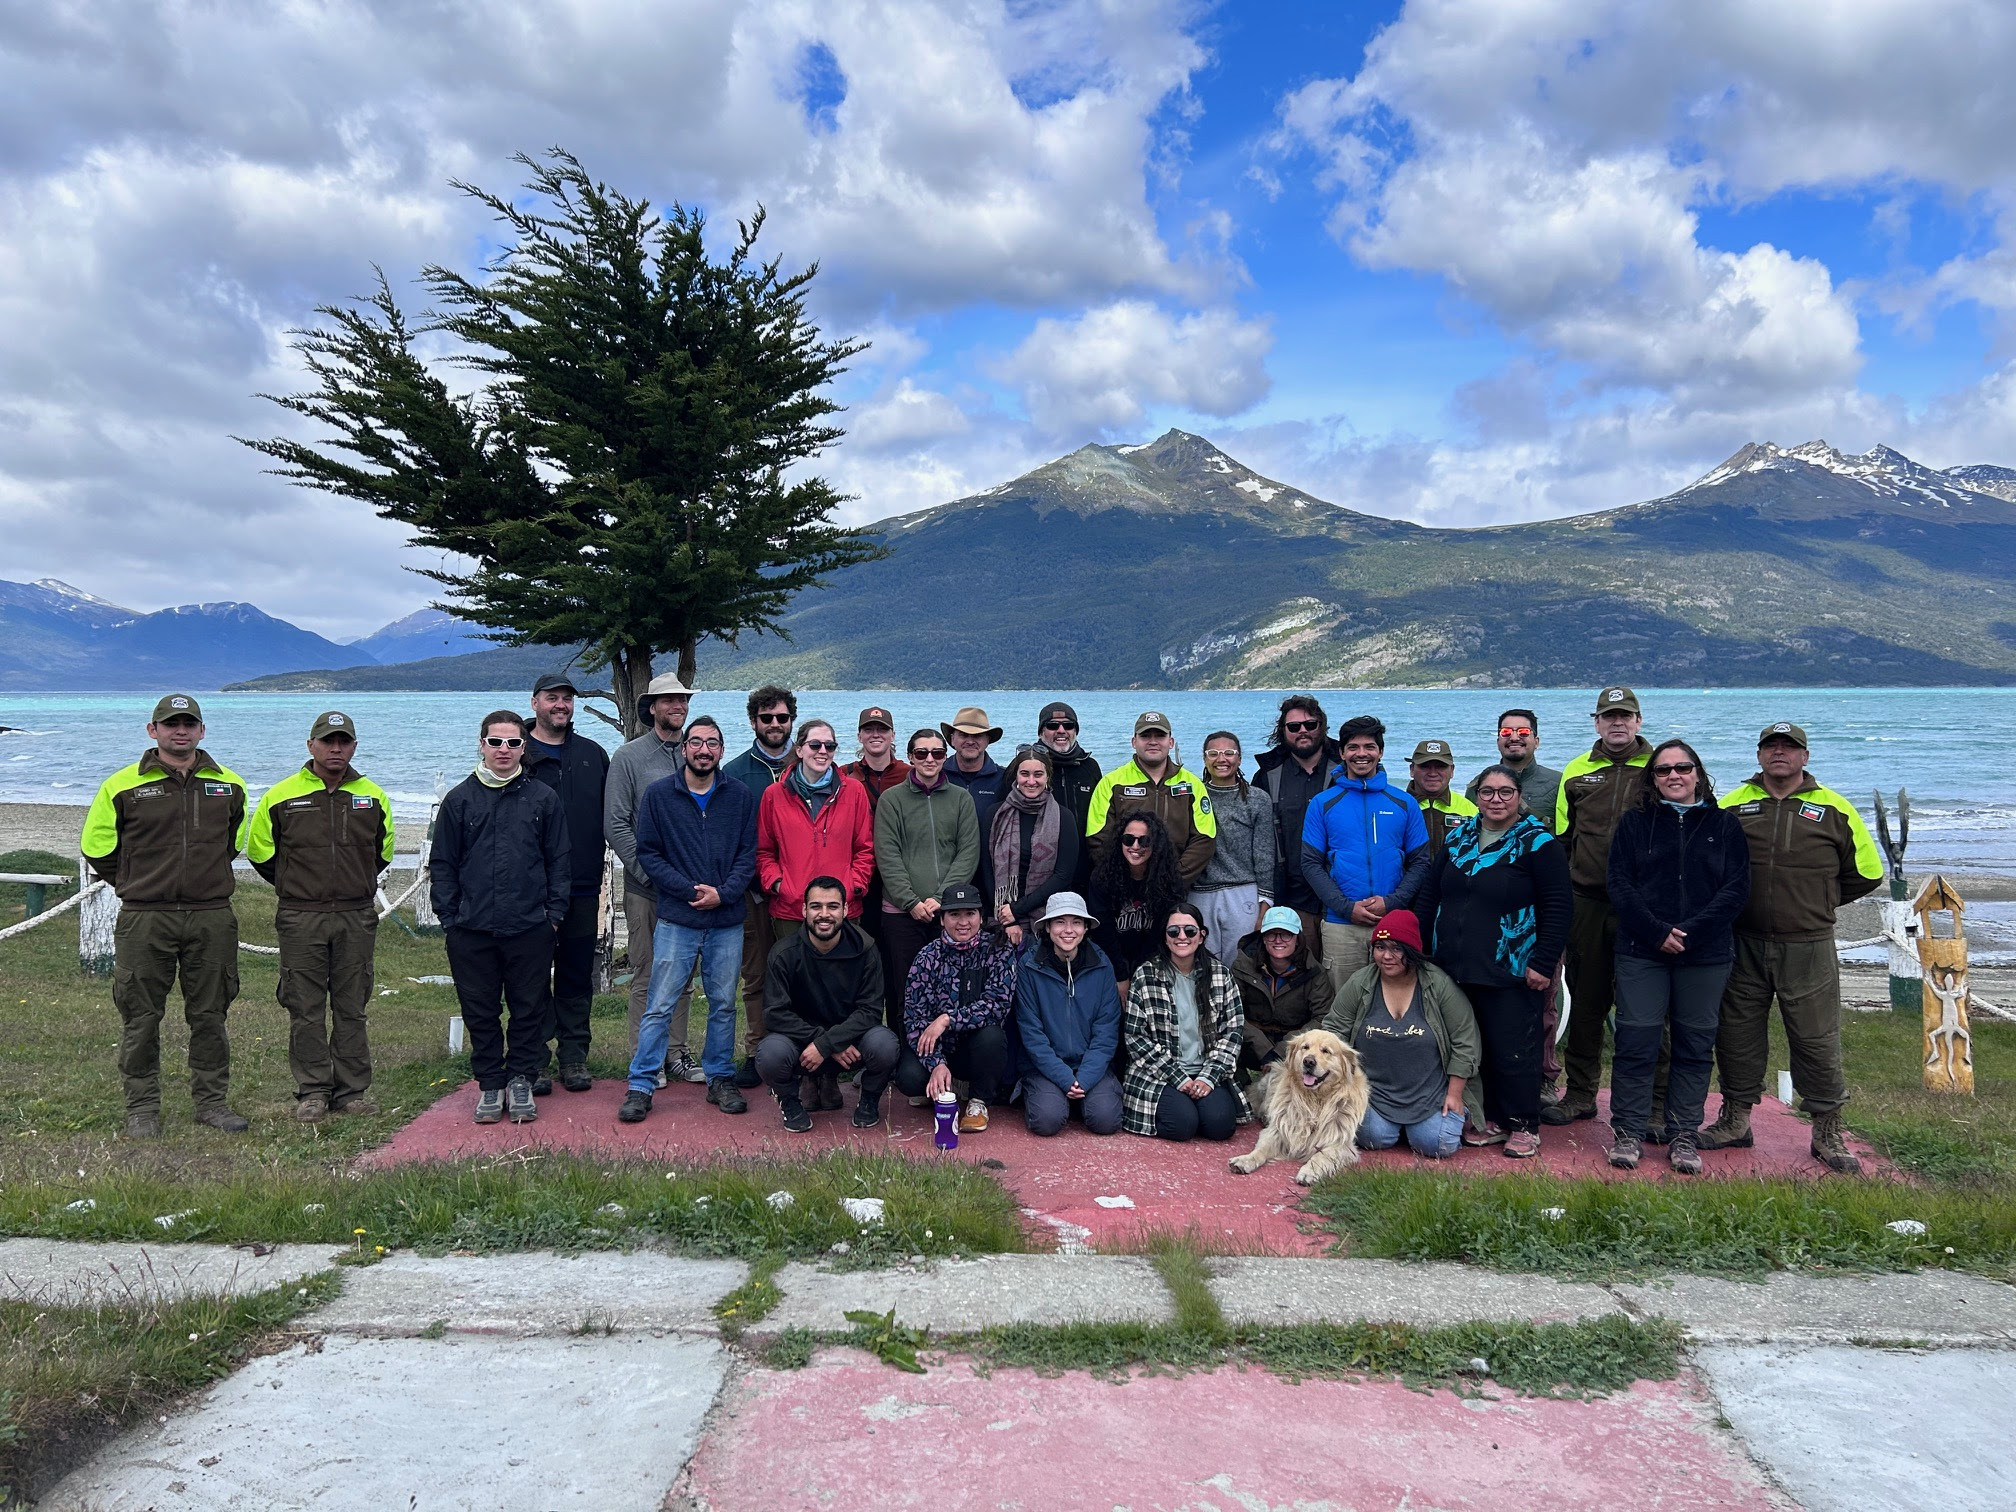 Con el apoyo de Carabineros, investigadores CHIC lideraron pasantía de estudiantes estadounidenses por Yendegaia, Tierra del Fuego